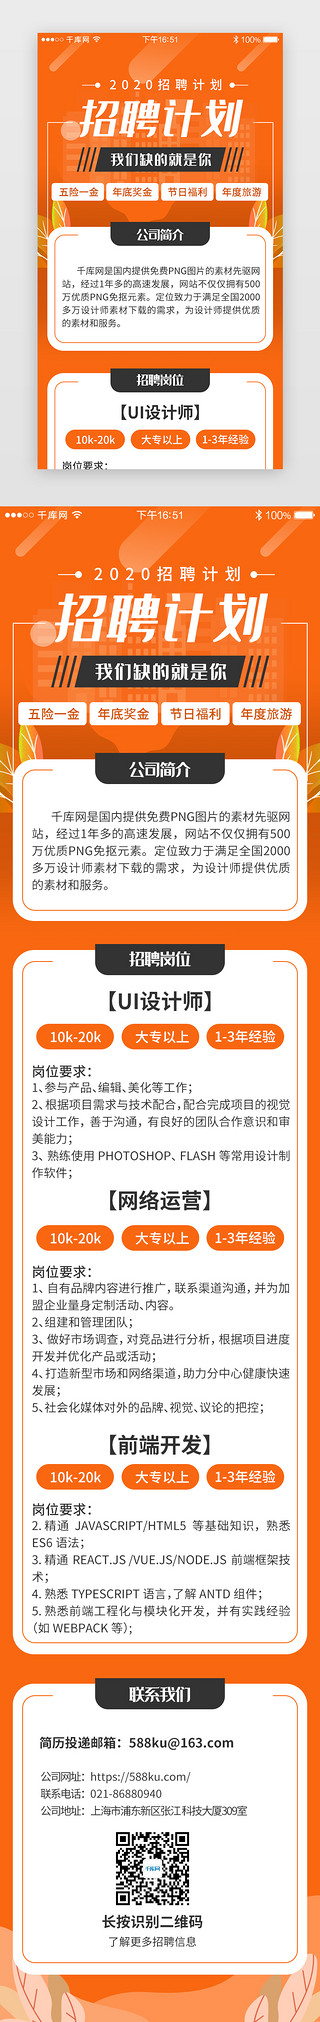 图书馆招聘UI设计素材_橙色系app招聘求职H5